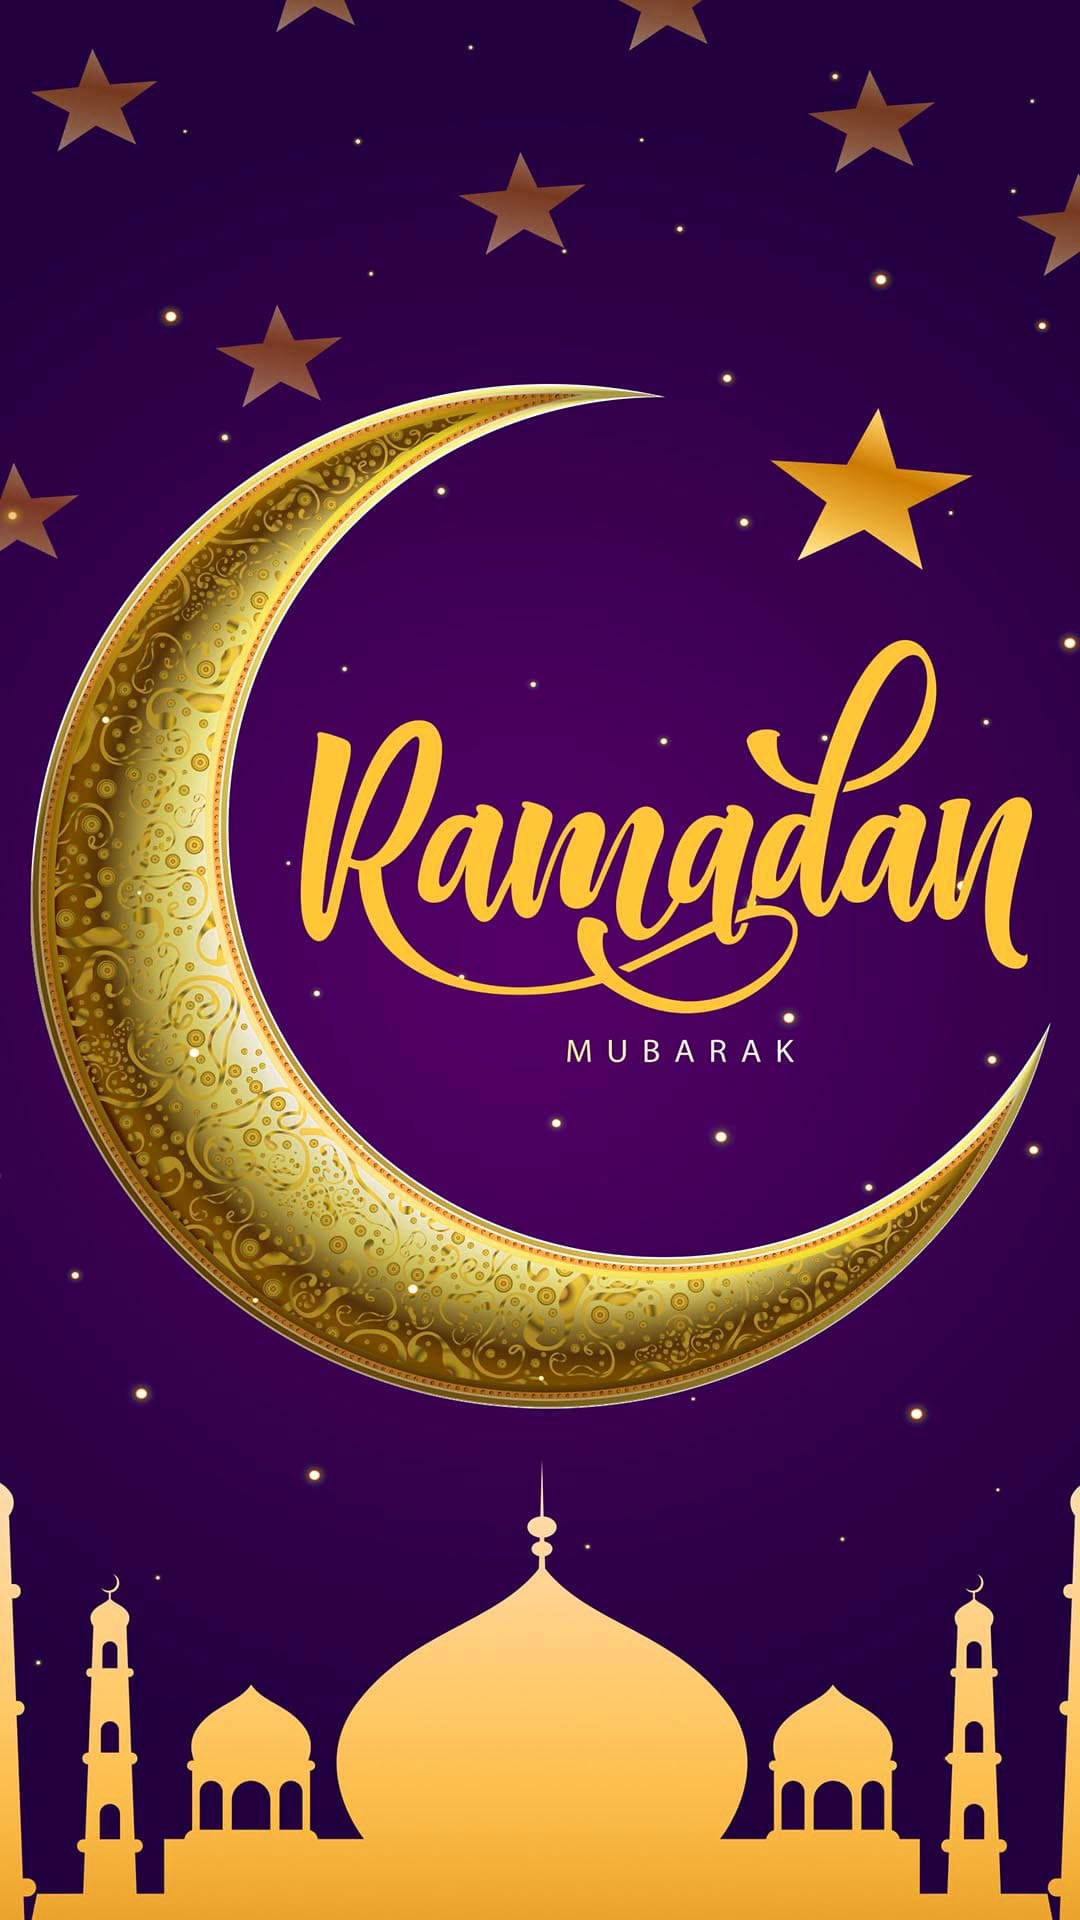 Ramadan Background Images  Free Download on Freepik